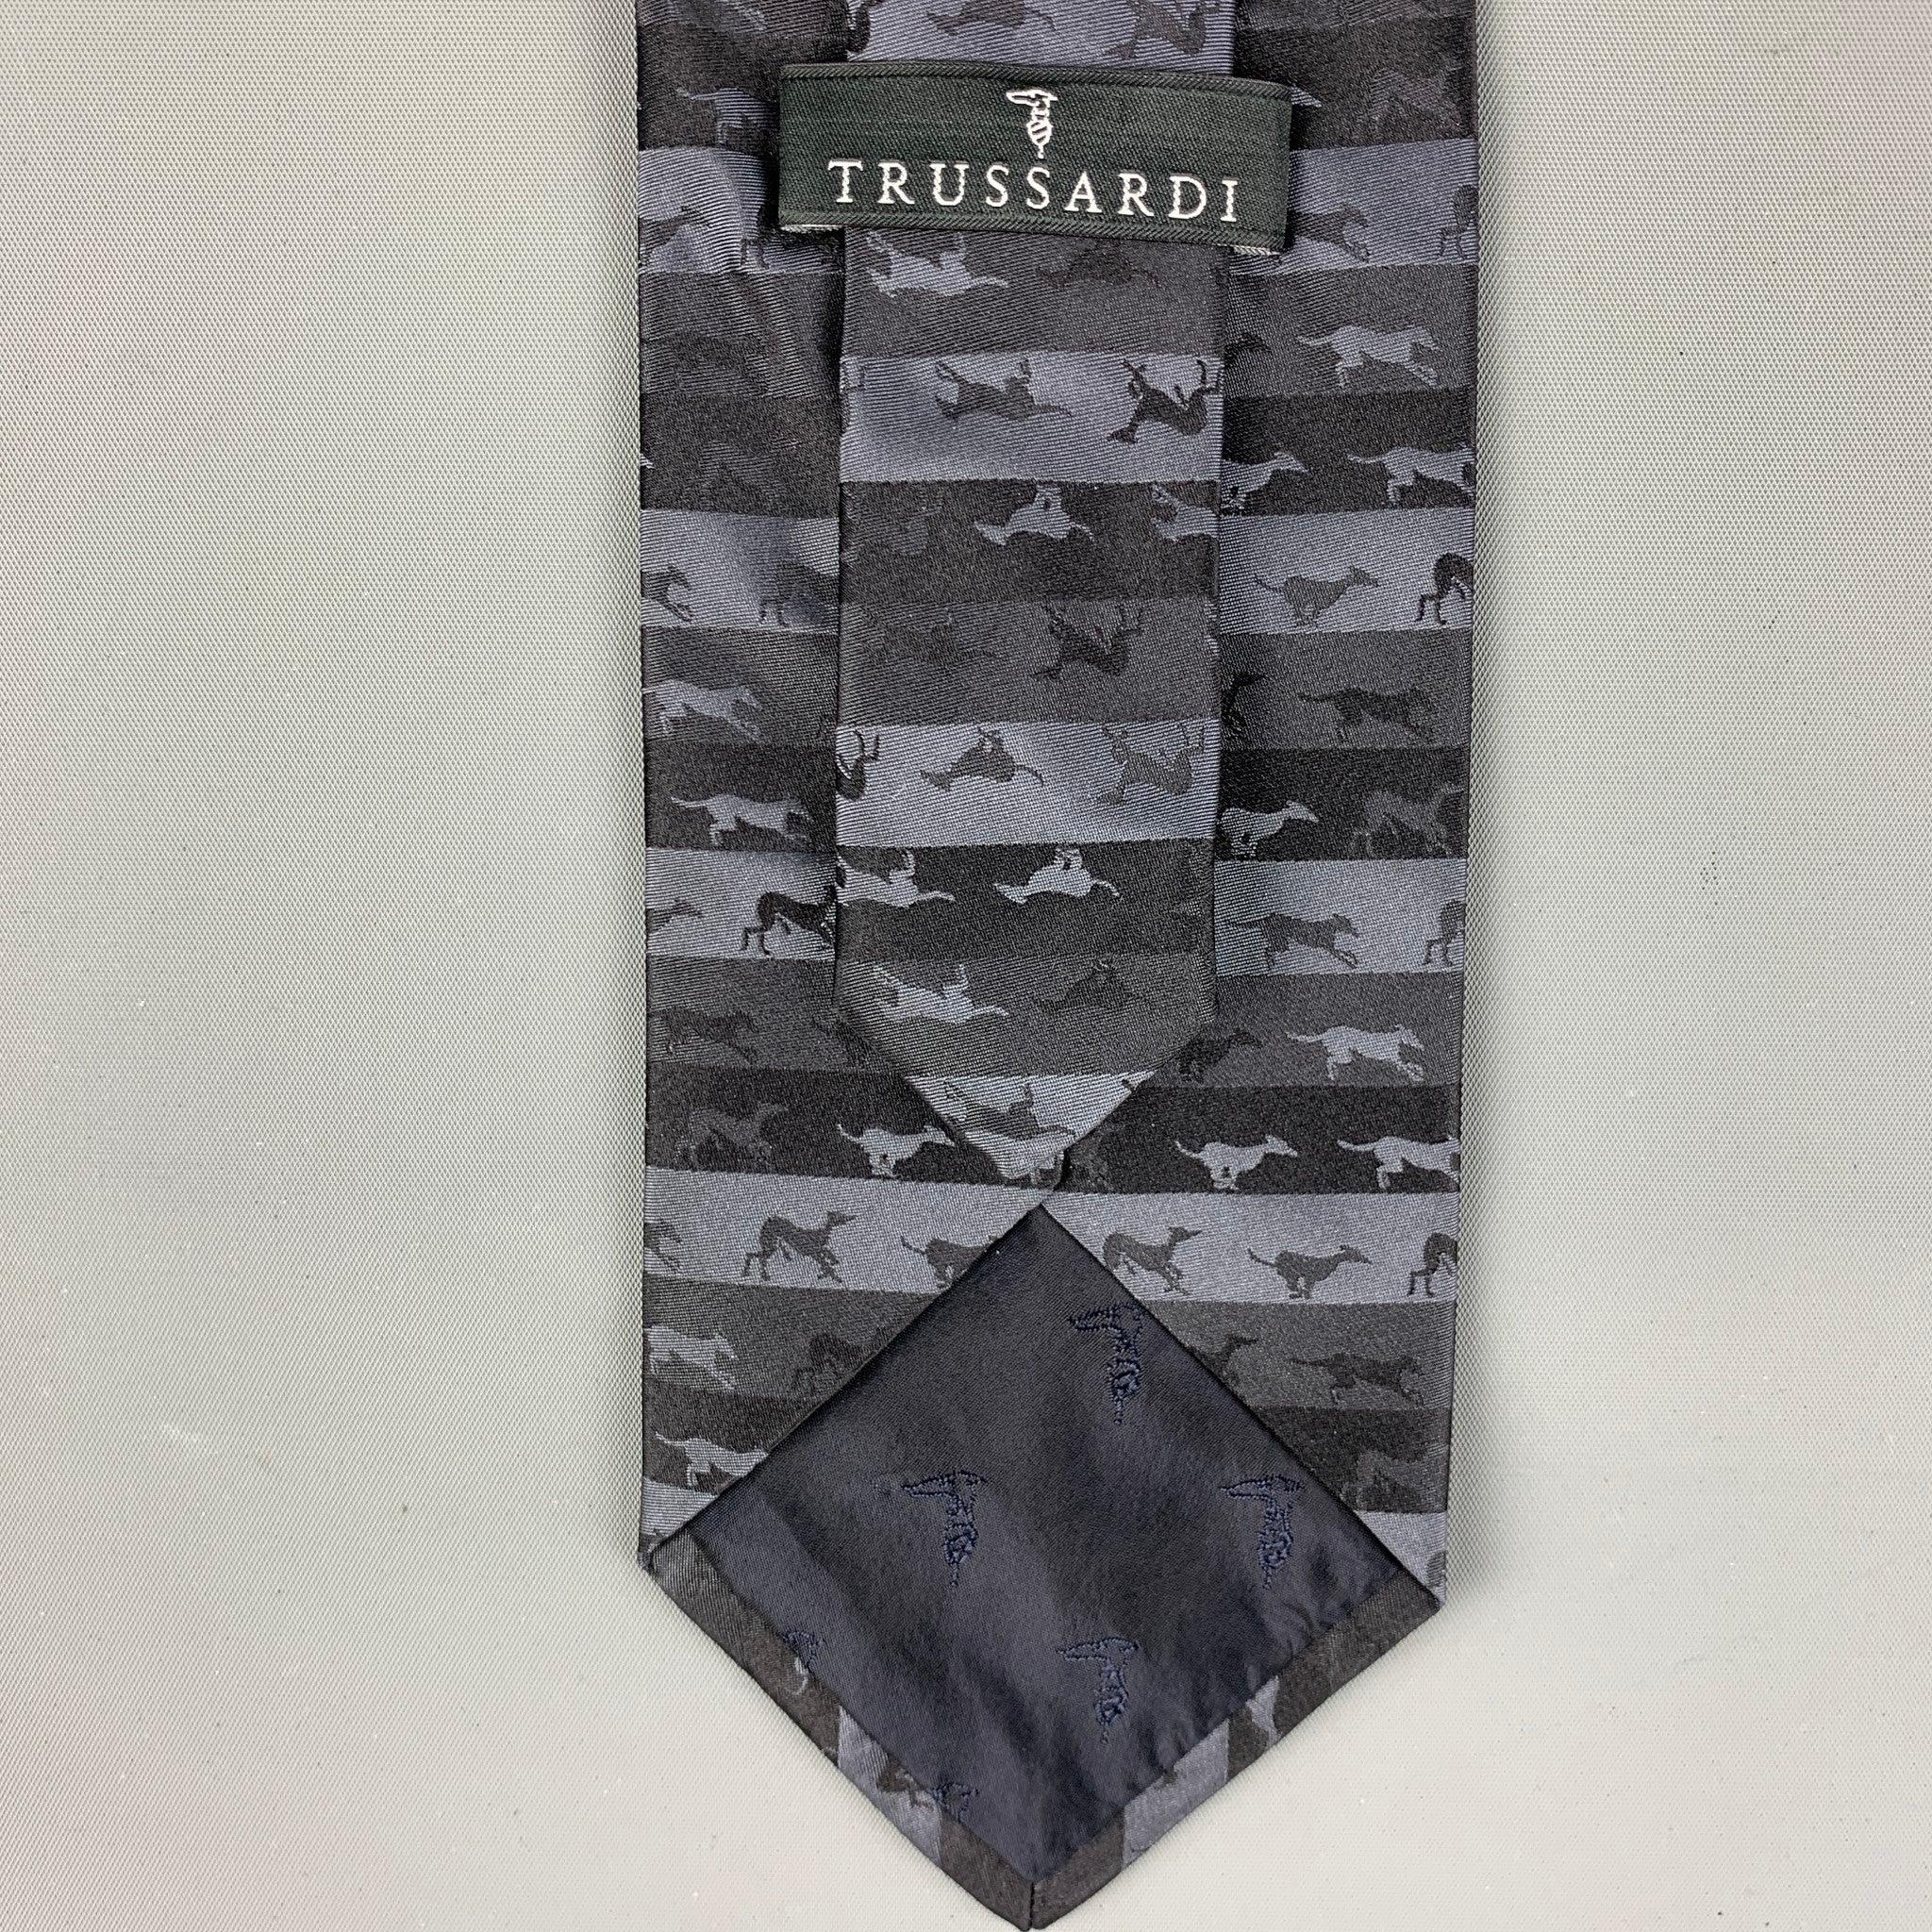 TRUSSARDI Cravate rayée « Dogs » noire et grise Pour hommes en vente